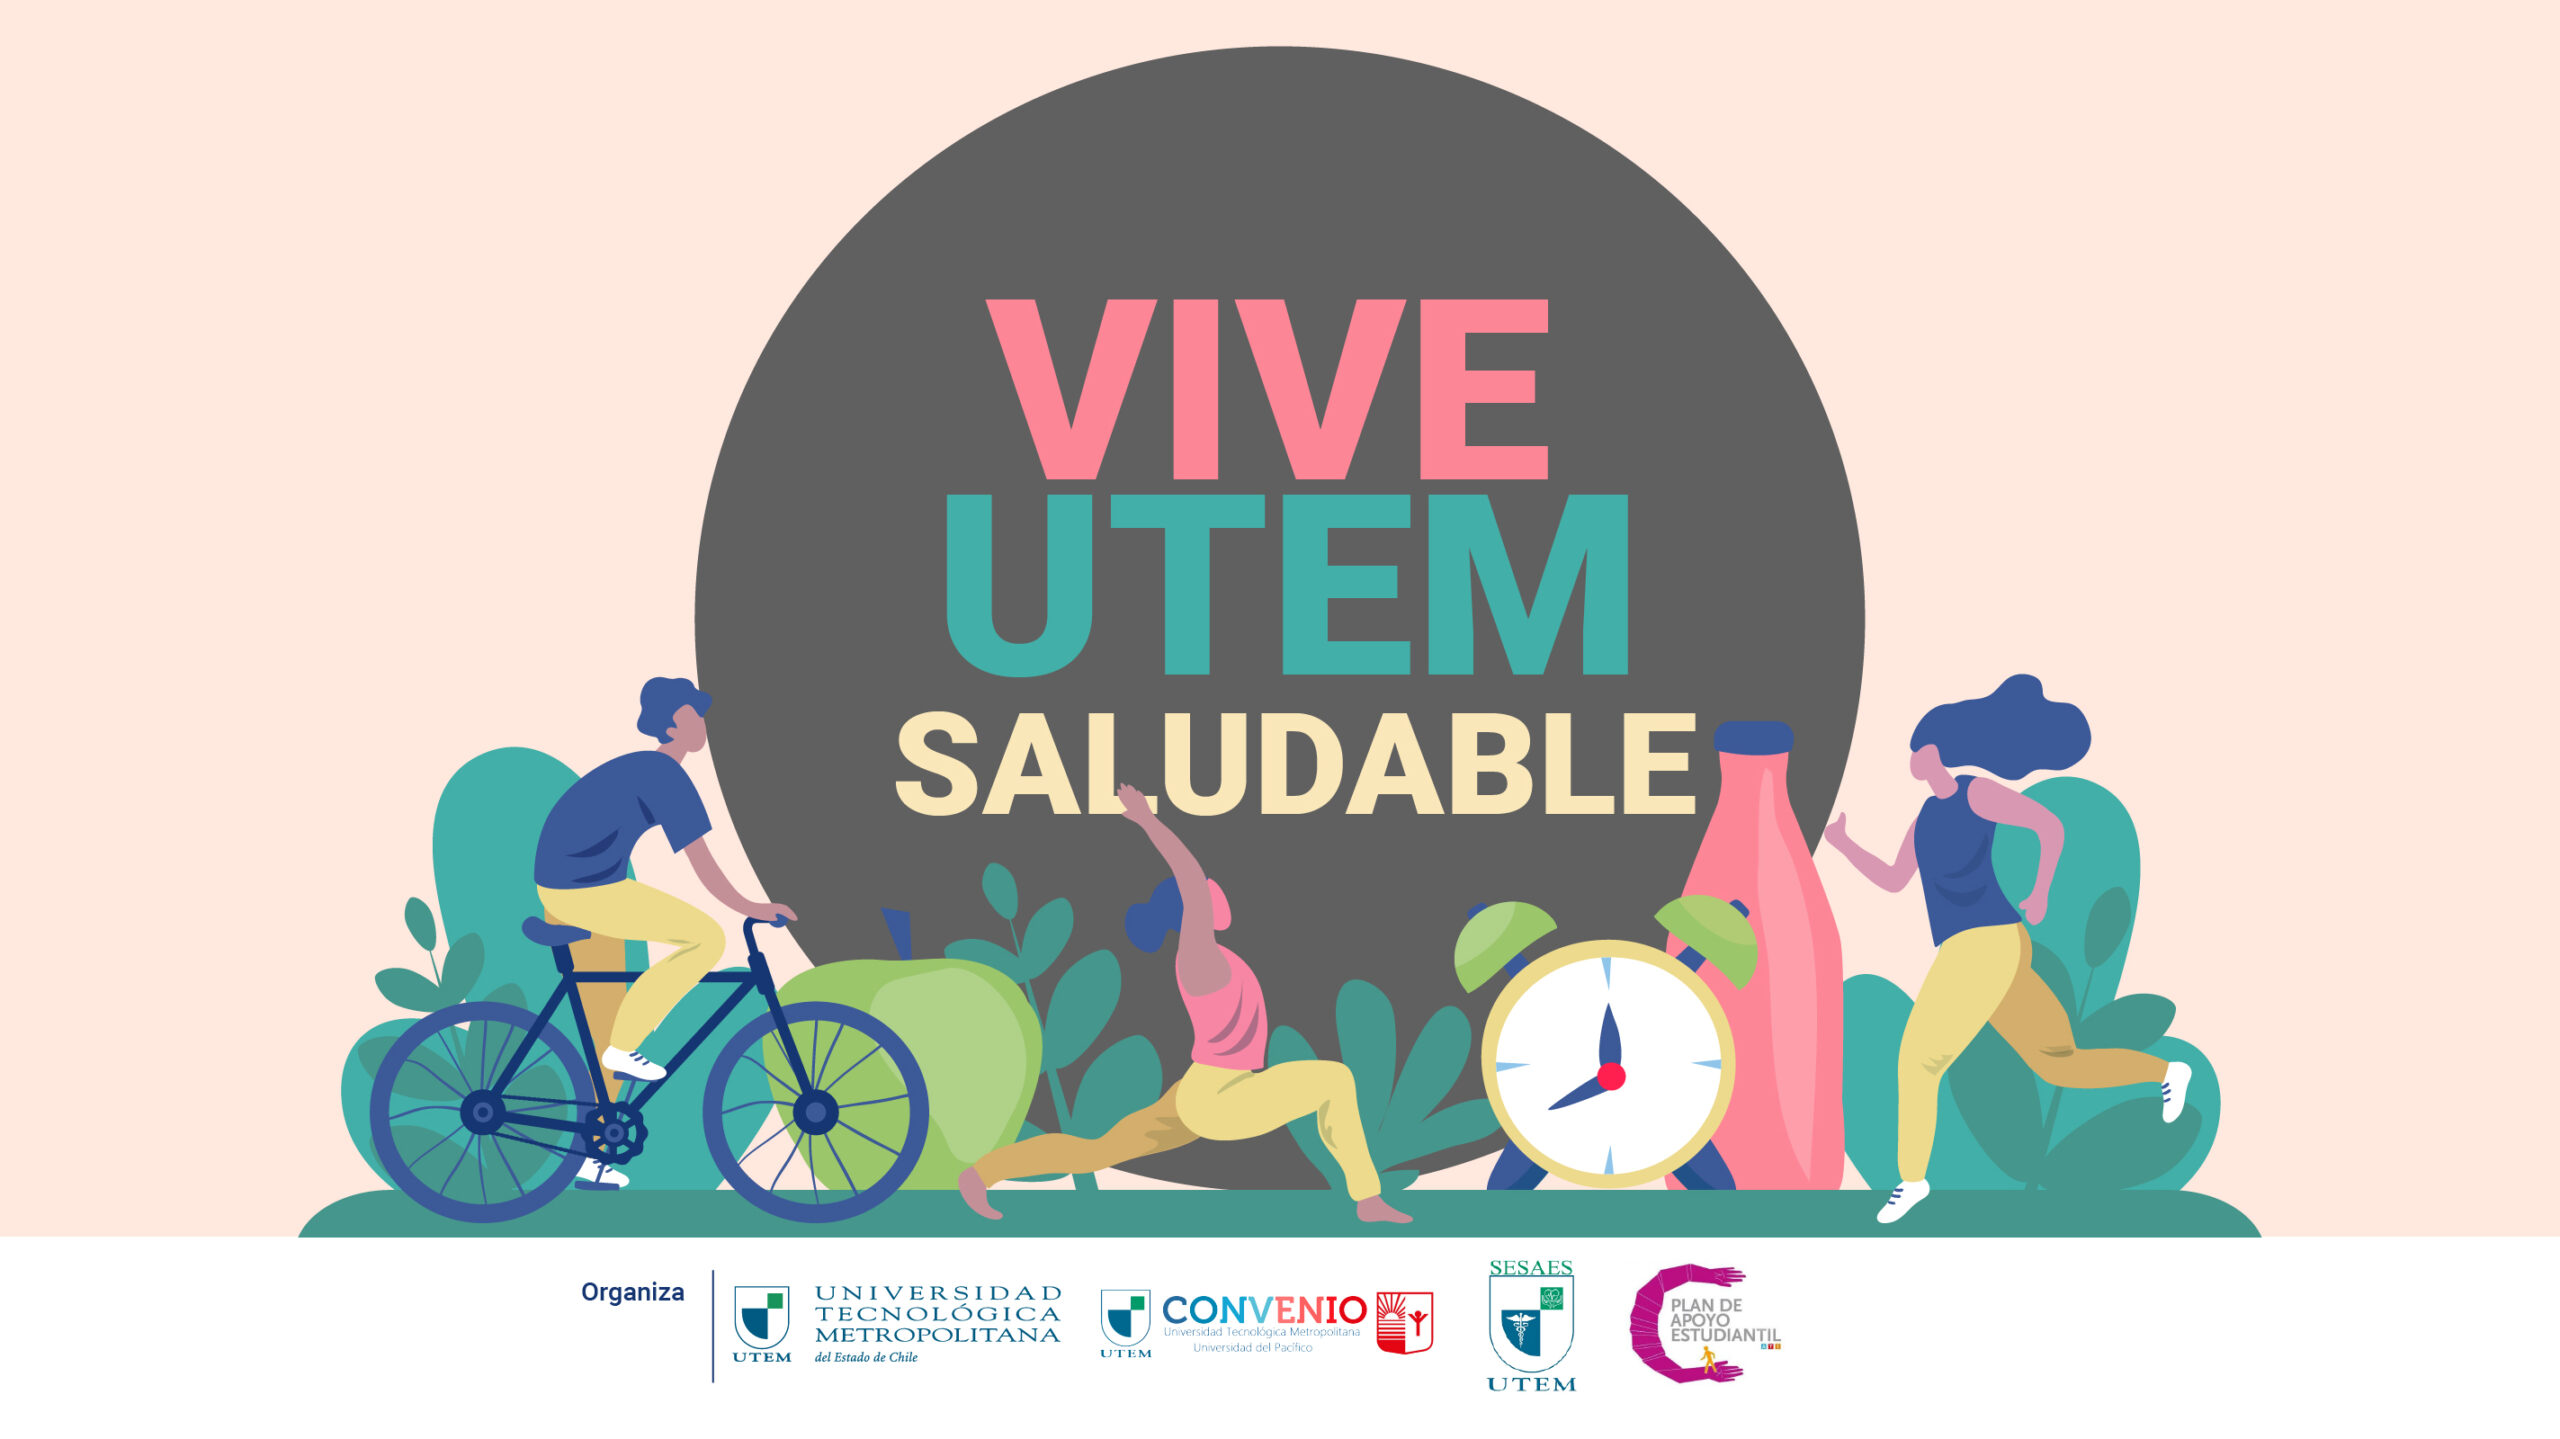 Participa en la Semana Vive UTEM Saludable